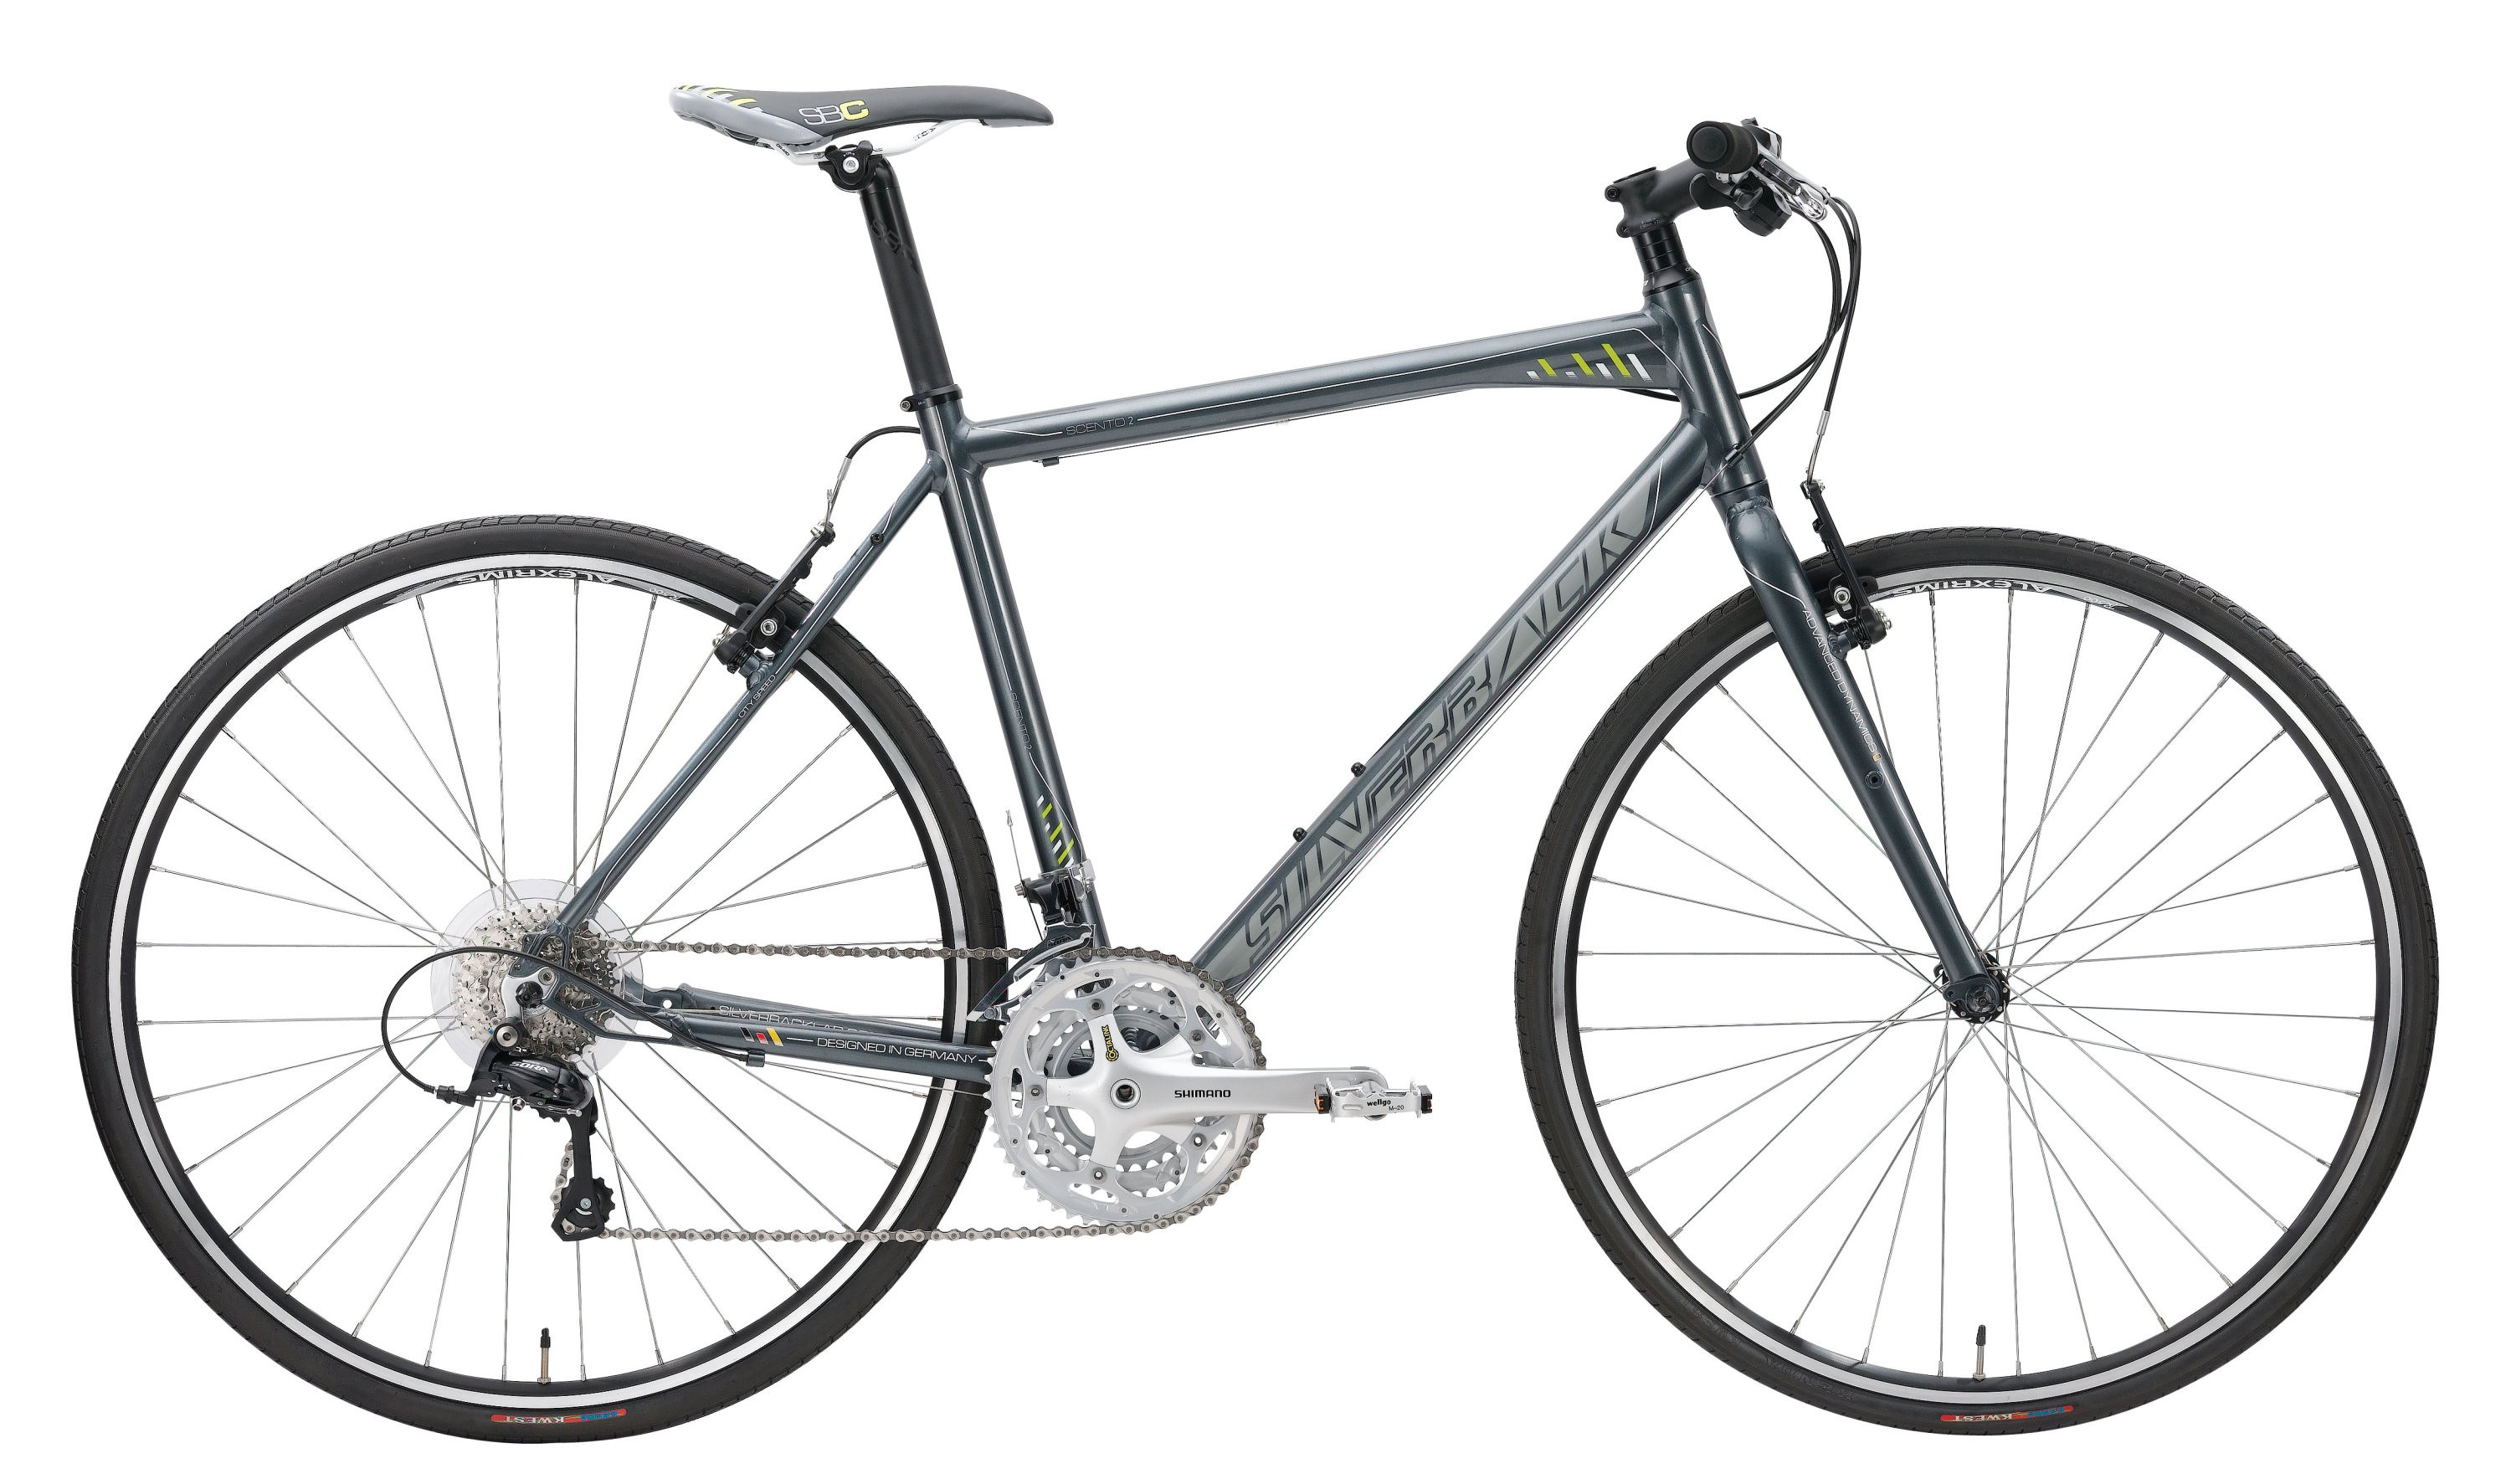  Отзывы о Городском велосипеде Silverback Scento 2 2013